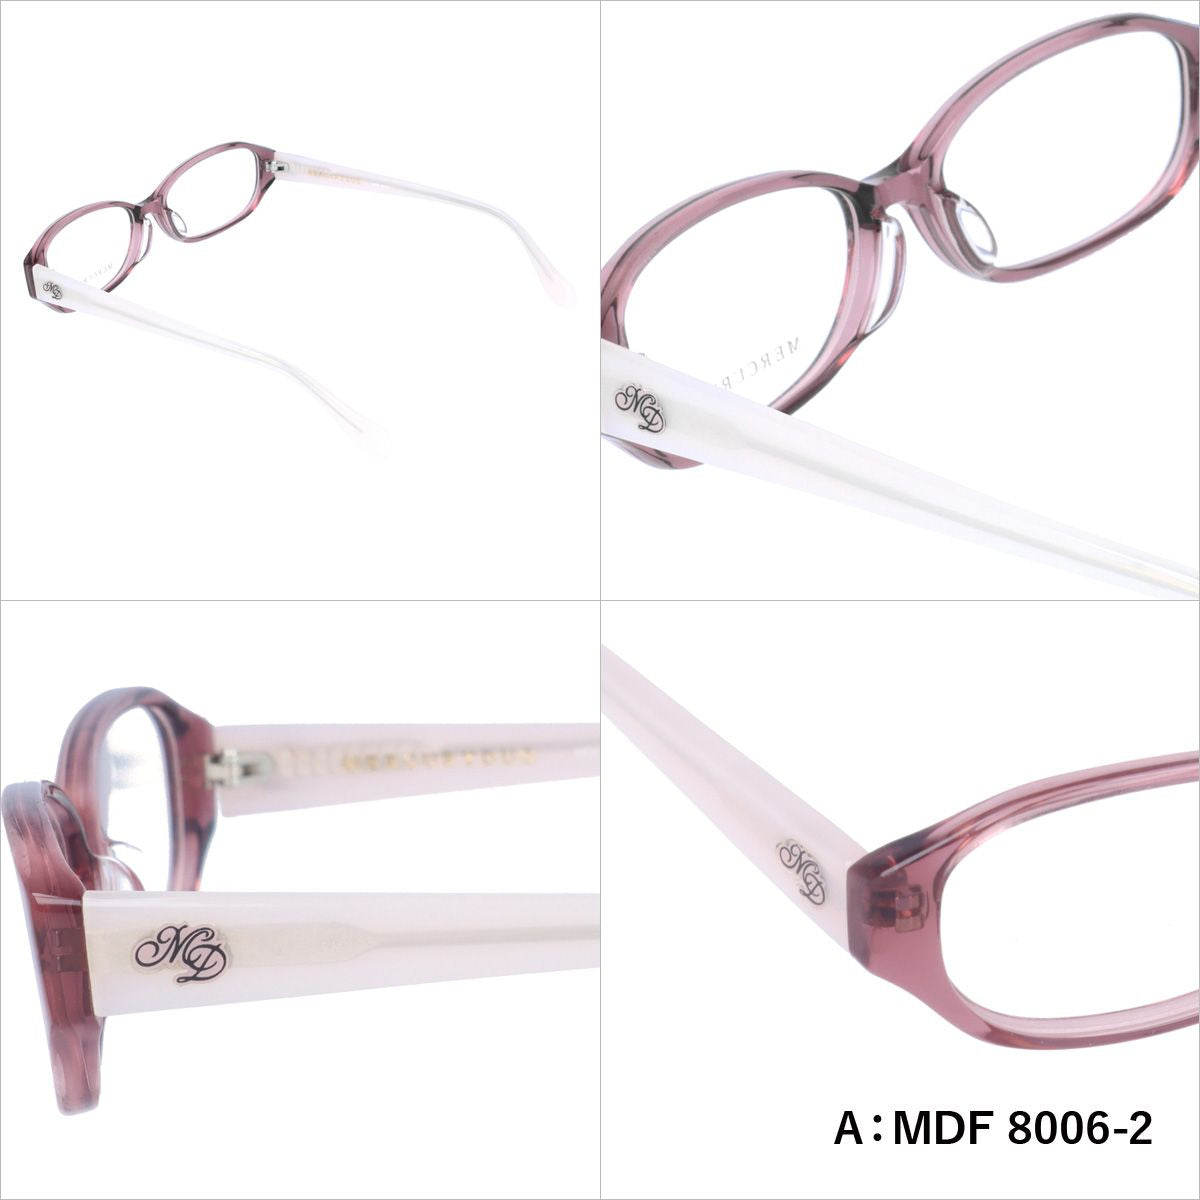 マーキュリーデュオ リーディンググラス フレーム レディース ブランド 度付き 度入り メガネ 眼鏡 アジアンフィット MERCURYDUO MDF 8006-2 / MDF 8009-3 / MDF 8019-3 / MDF 8022-3 レディース 女性 プレゼント